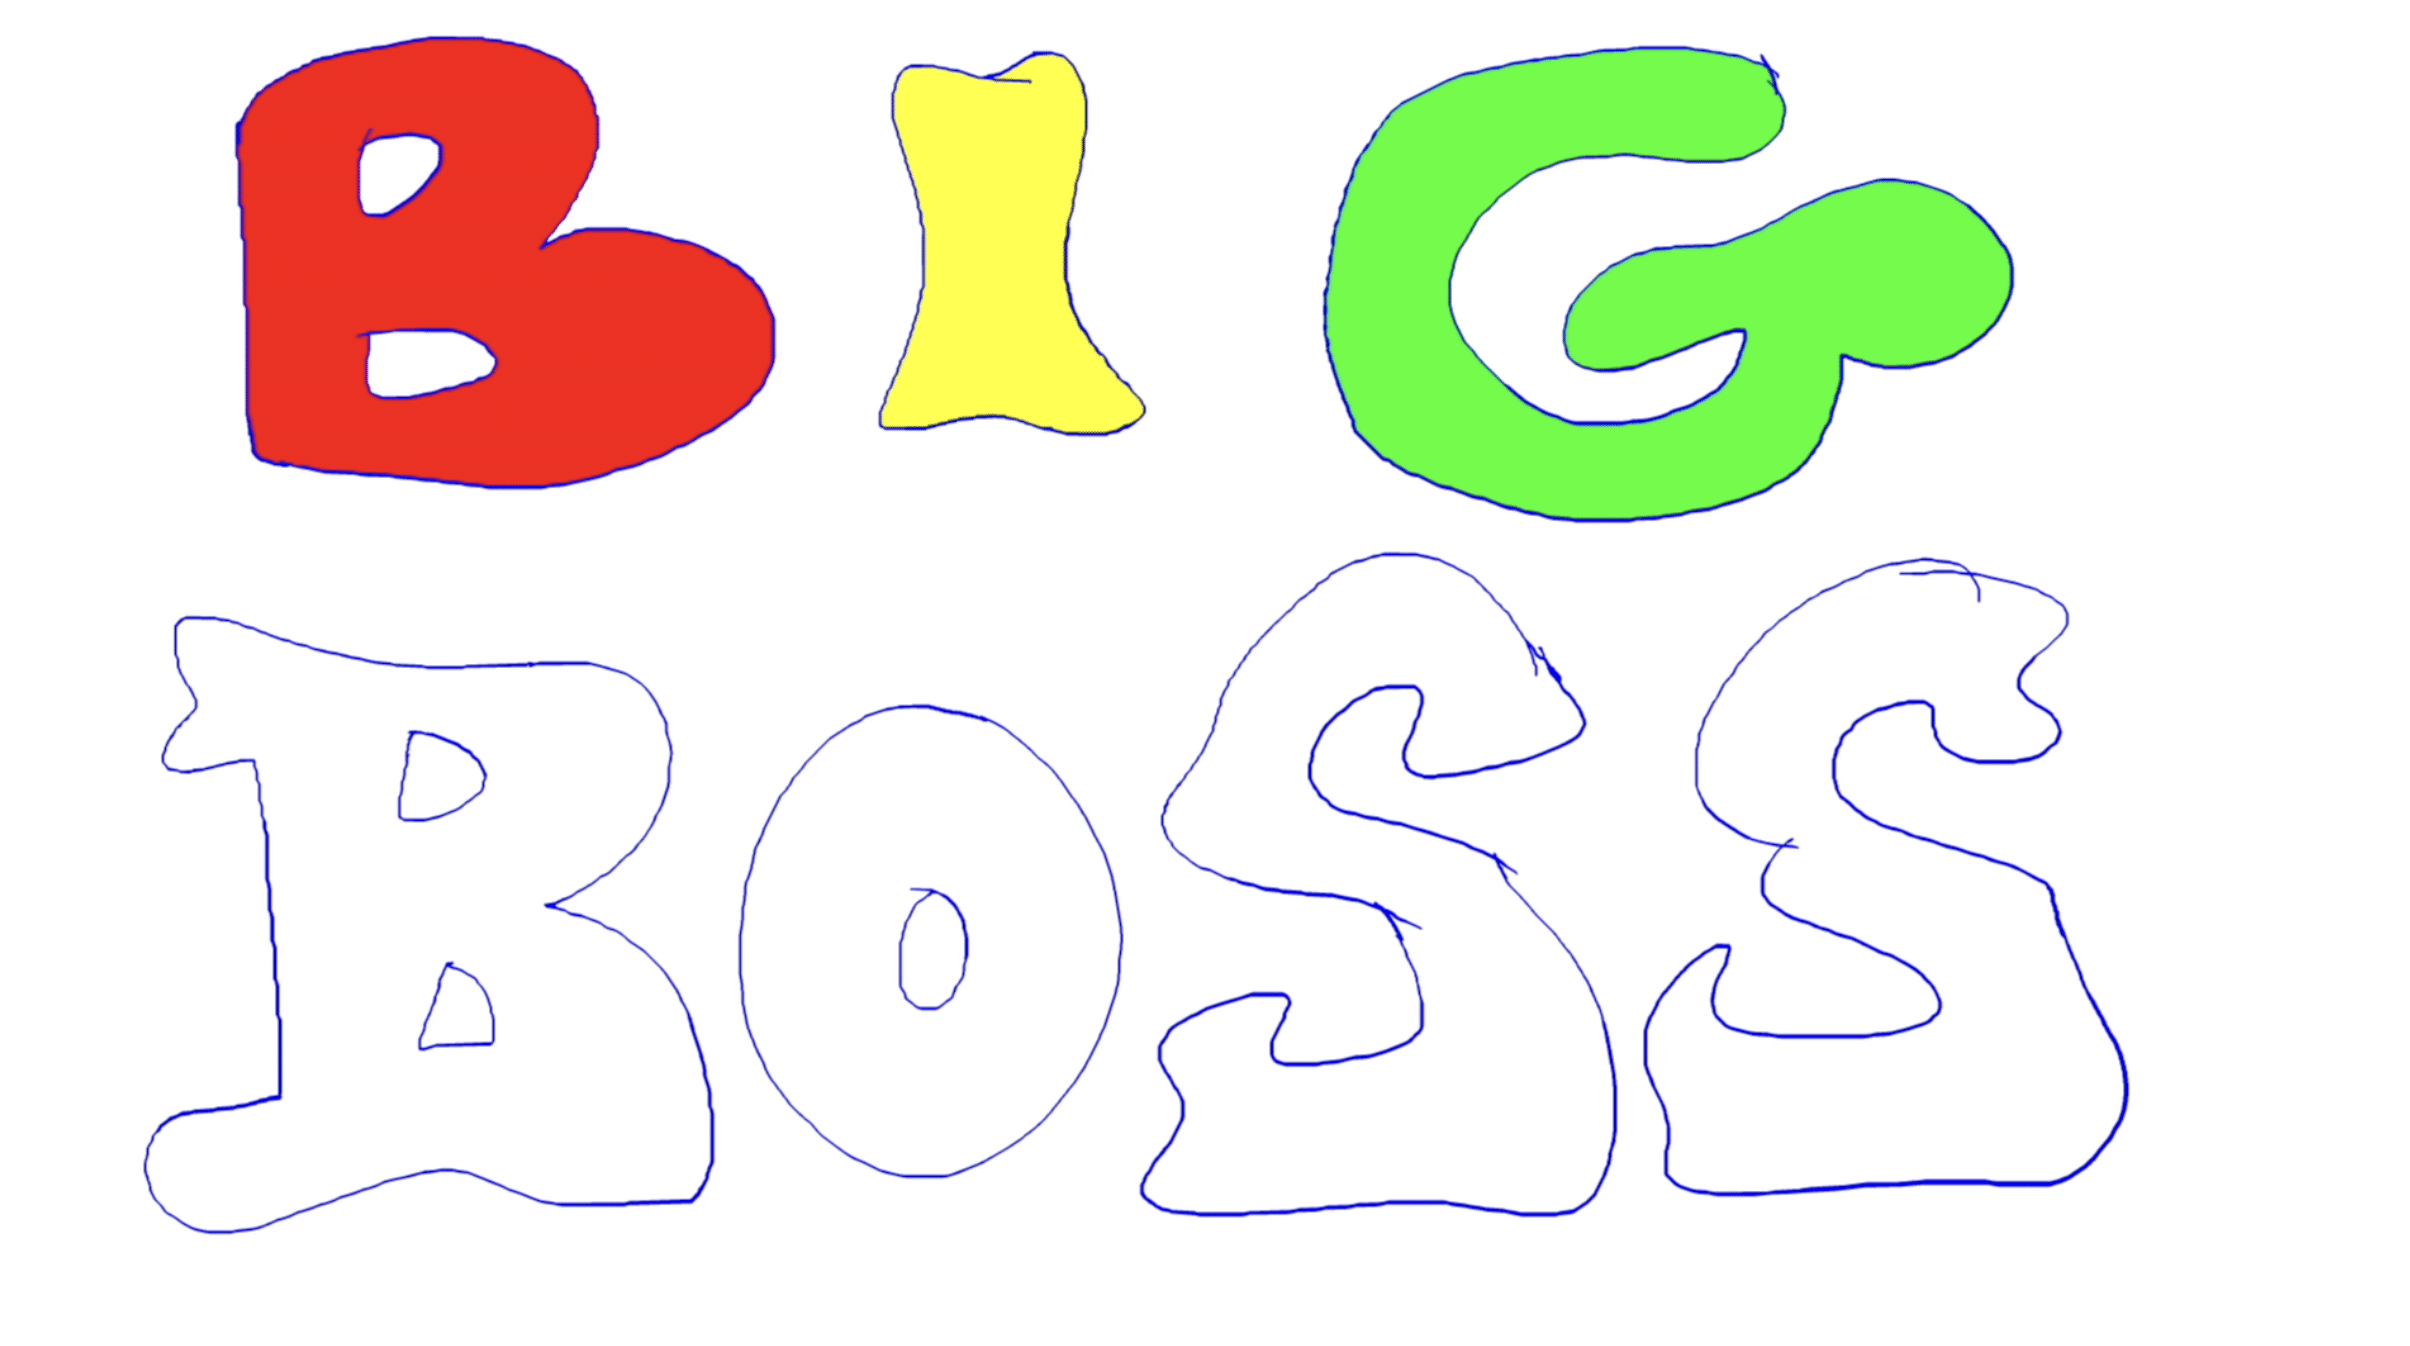 eine Skizze der Worte »big boss«, die sich langsam mit färbe füllen